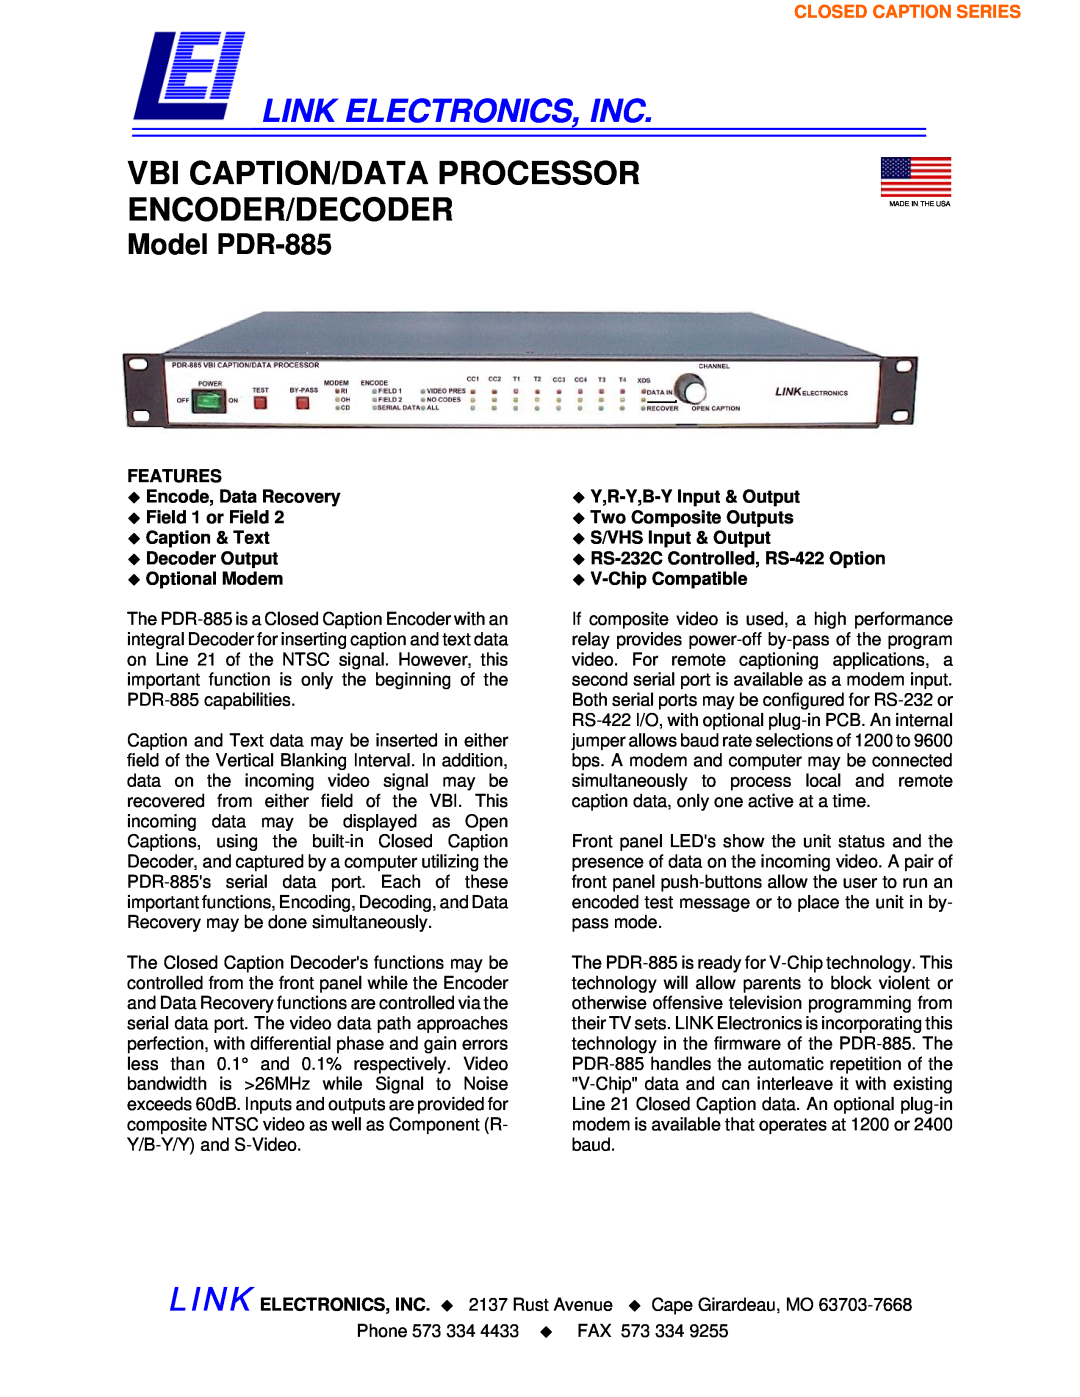 Link electronic manual Link Electronics, Inc, Vbi Caption/Data Processor Encoder/Decoder, Model PDR-885 